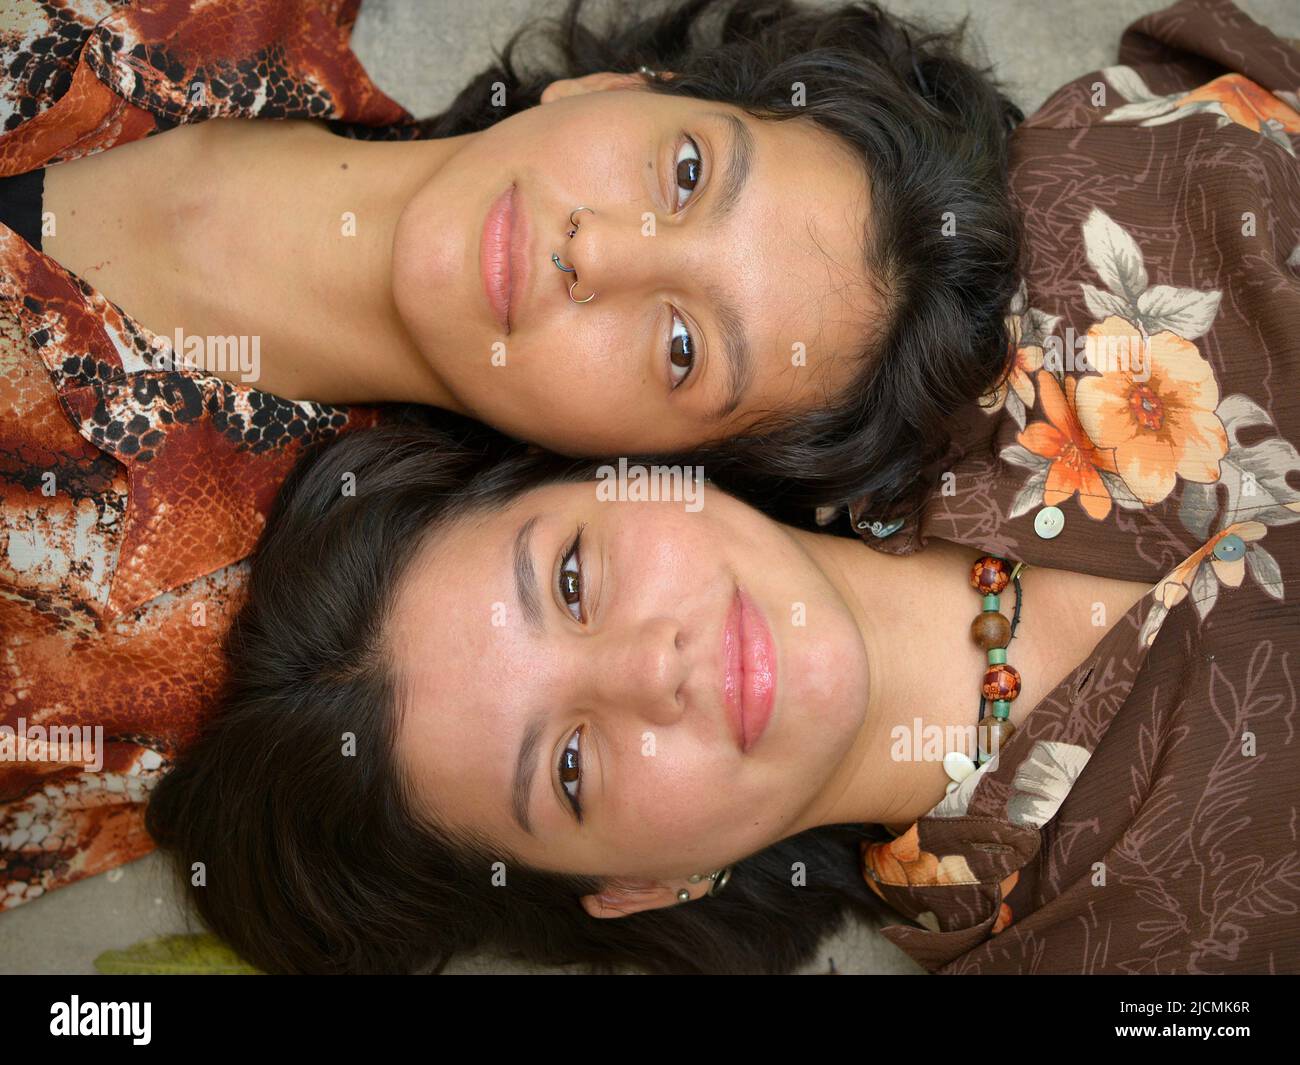 Zwei braunäugige, hübsche mexikanische Schwestern (junge Erwachsene) liegen auf dem Boden von Wange zu Wange Seite an Seite und schauen auf die Kamera. Stockfoto